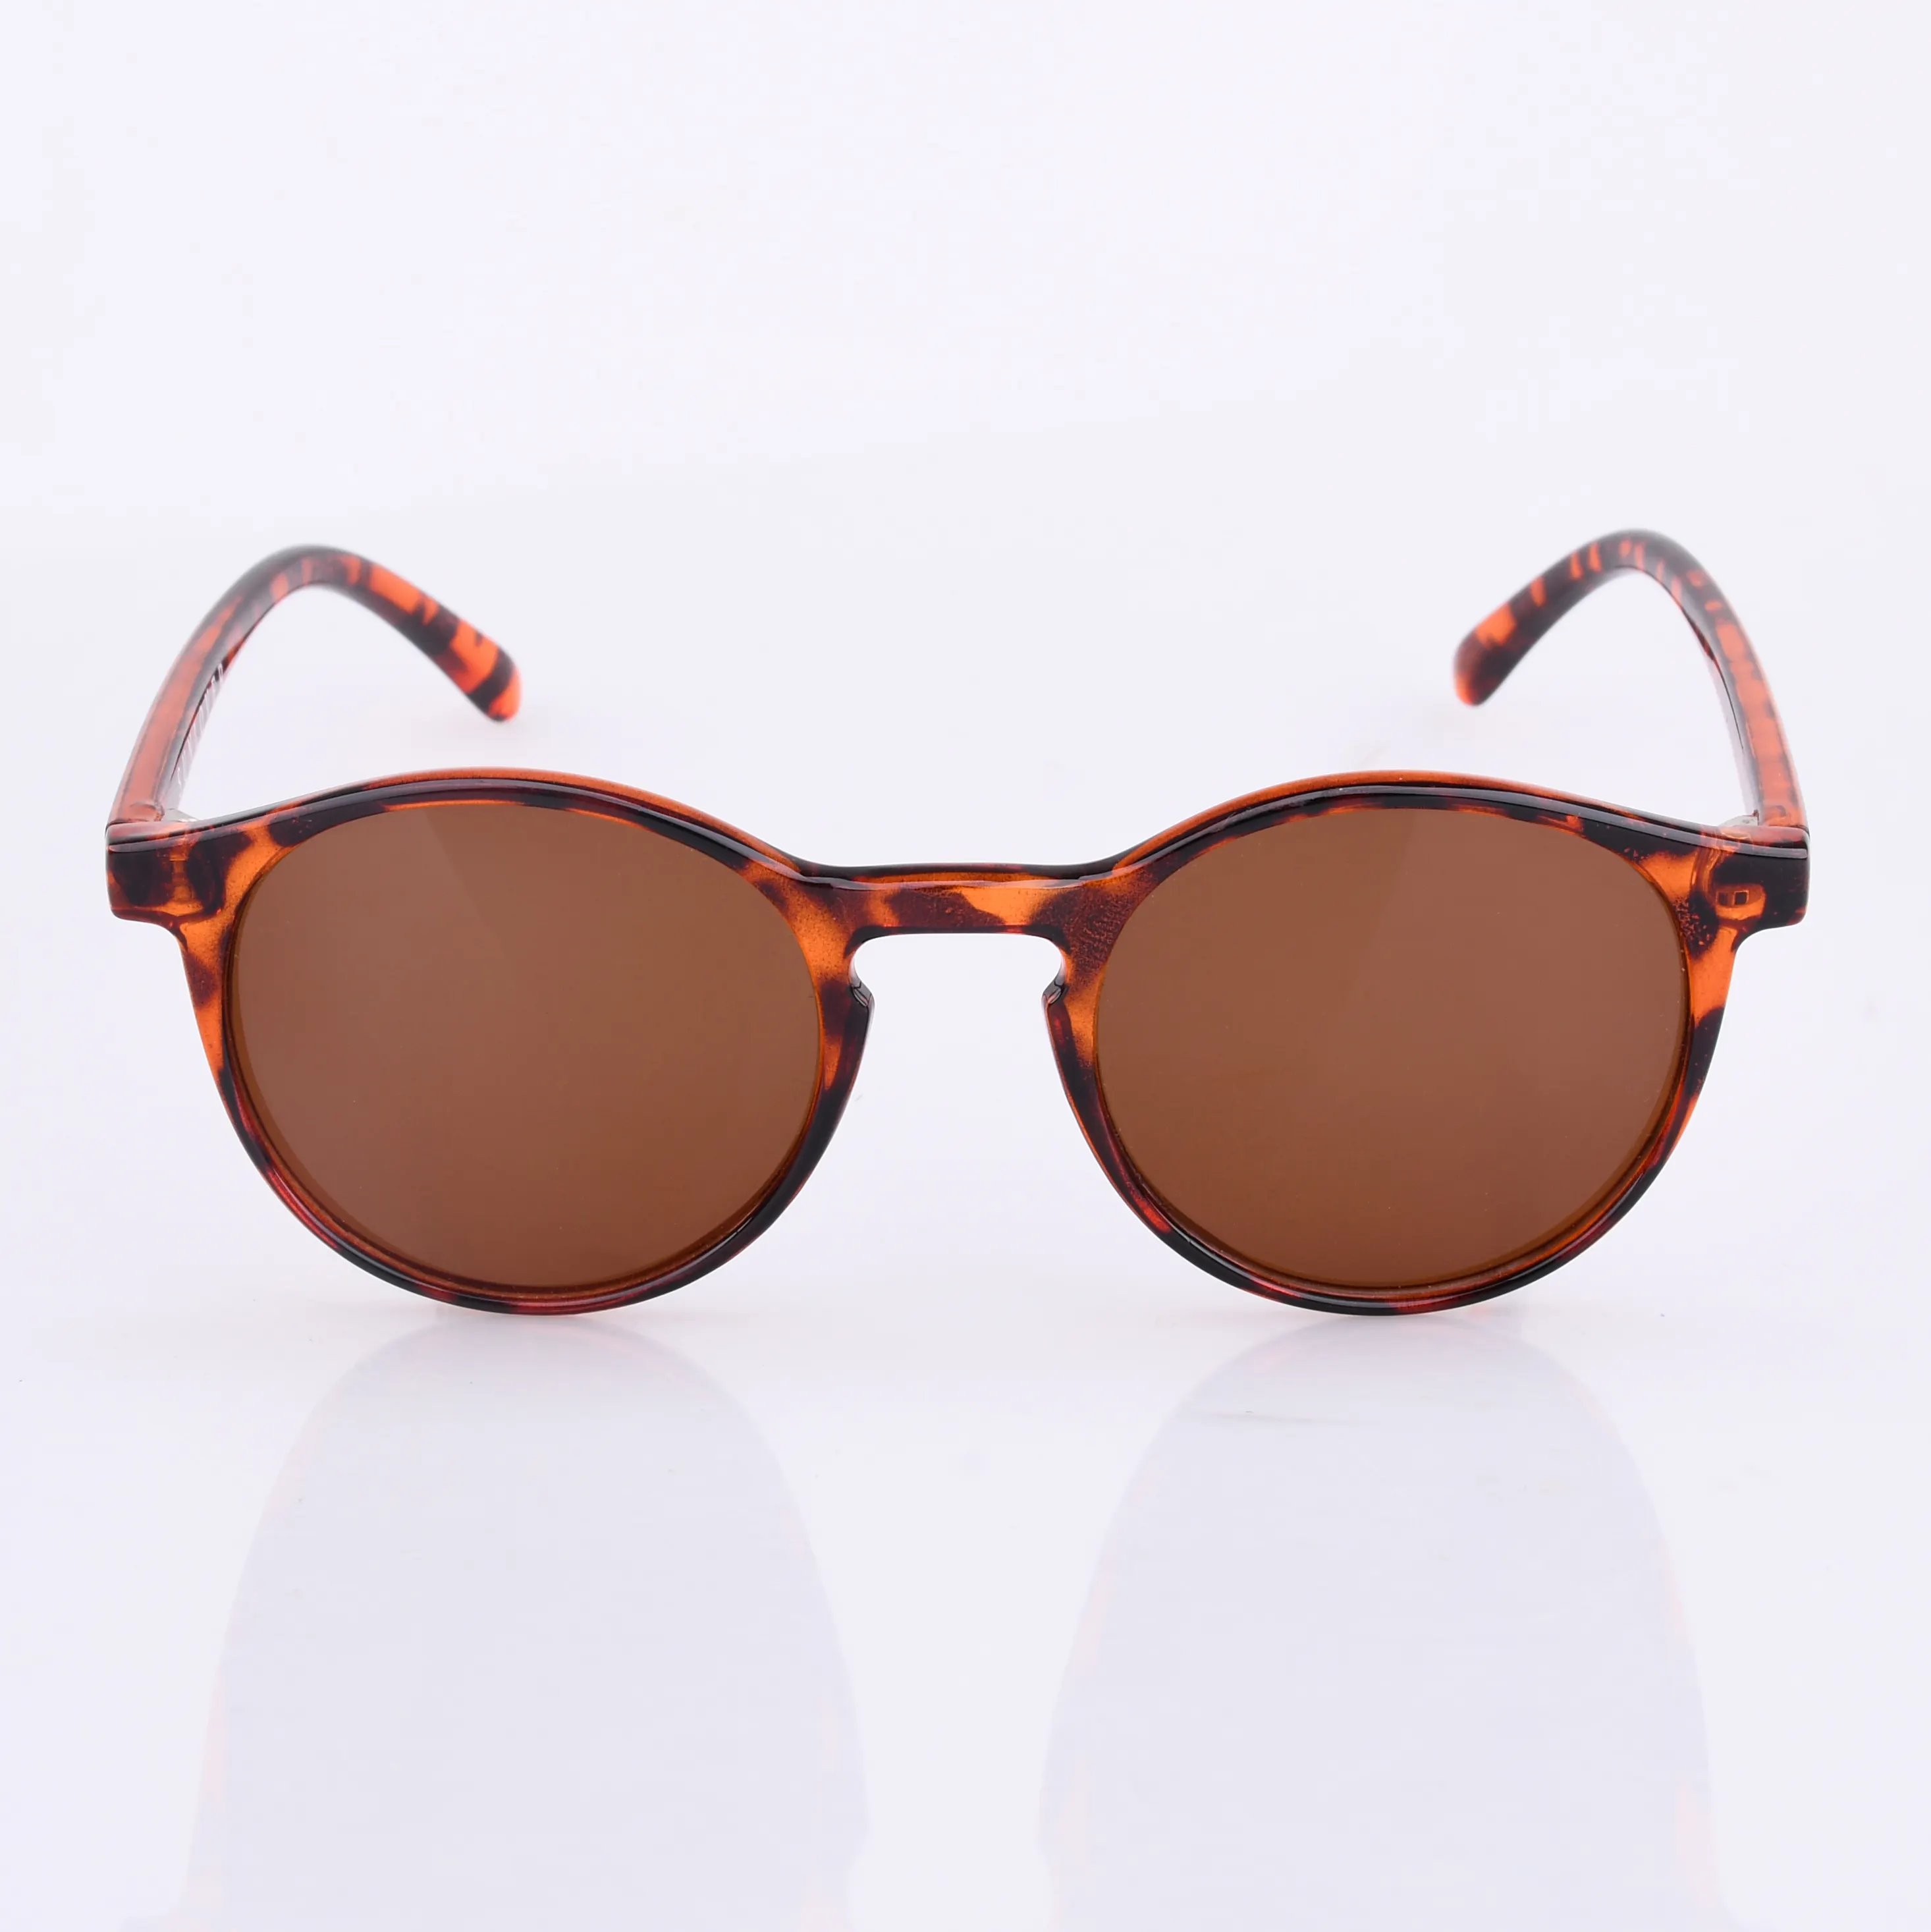 2010 clásico redondo al por mayor marco completo de marca de moda gafas de sol de encargo hecho a mano de la moda gafas de sol 2020